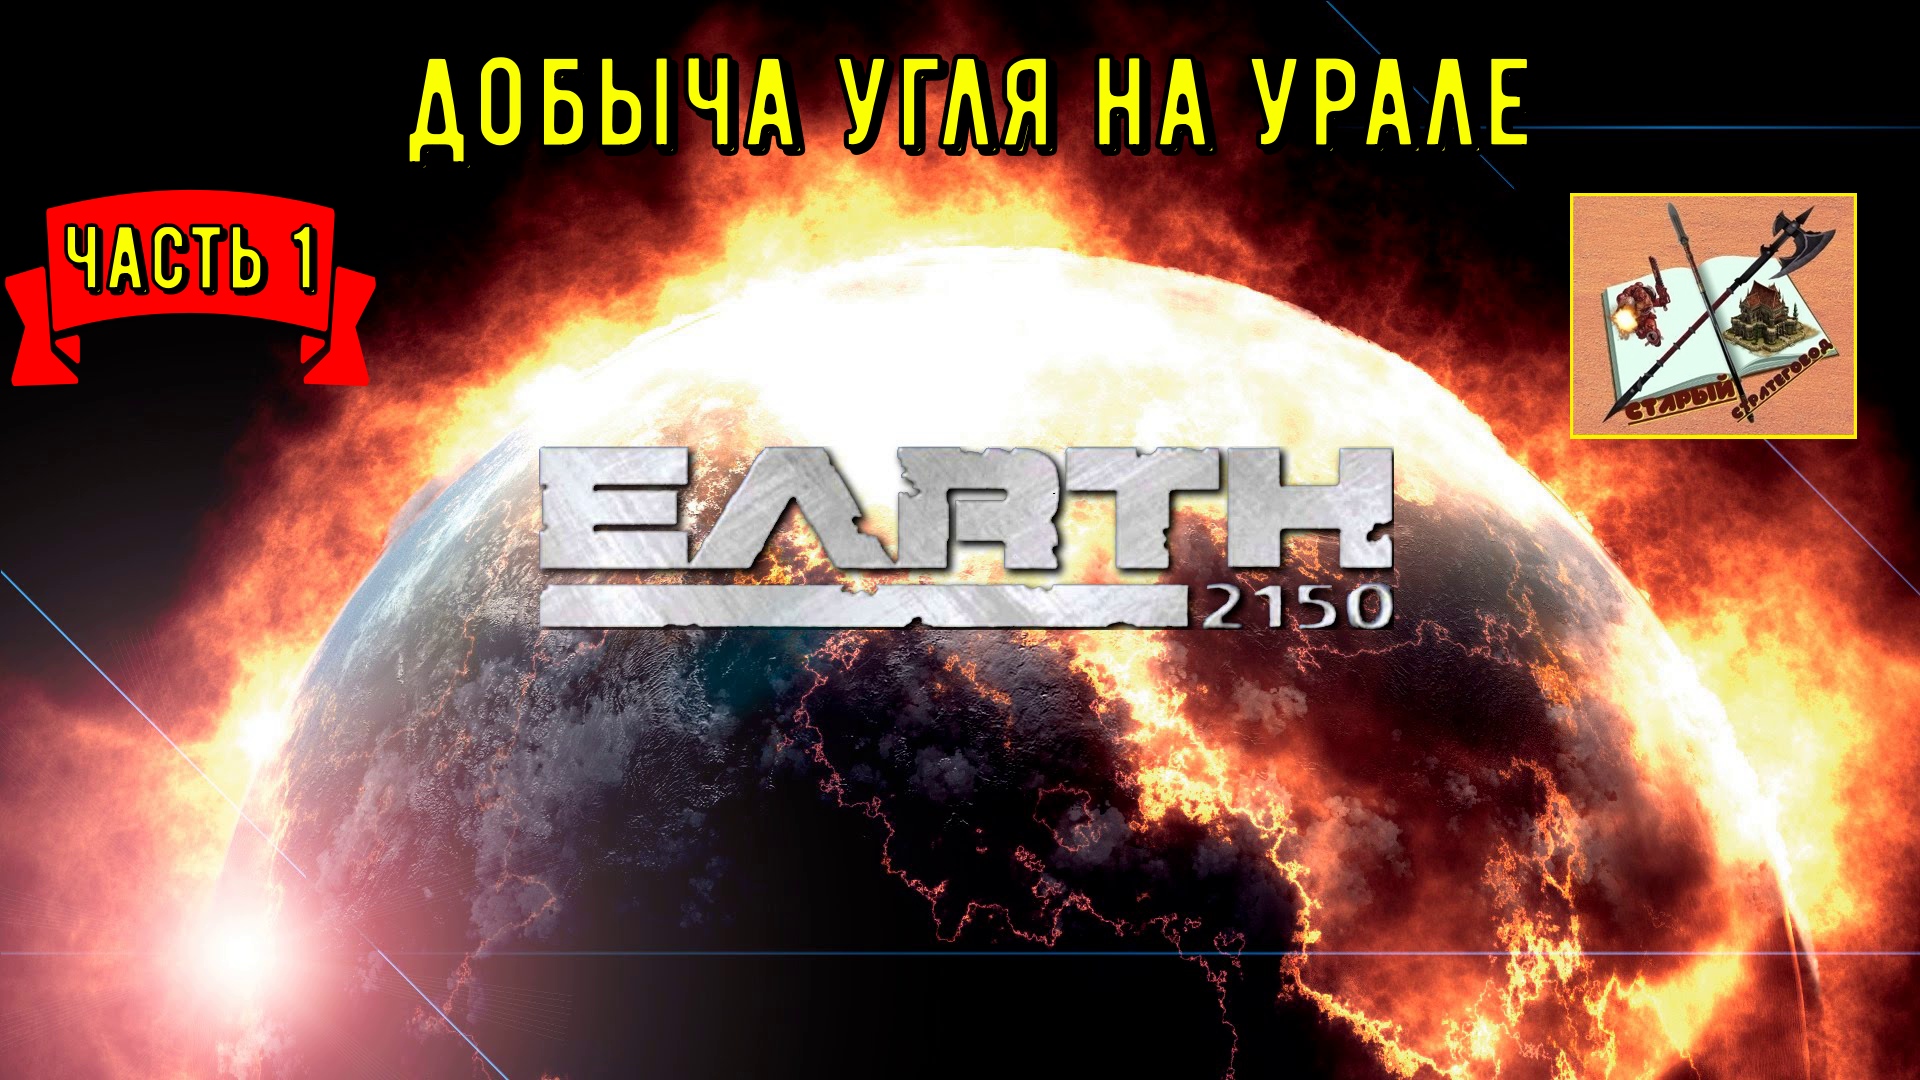 Земля 2150 Задание Первое Добыча руды на Урале